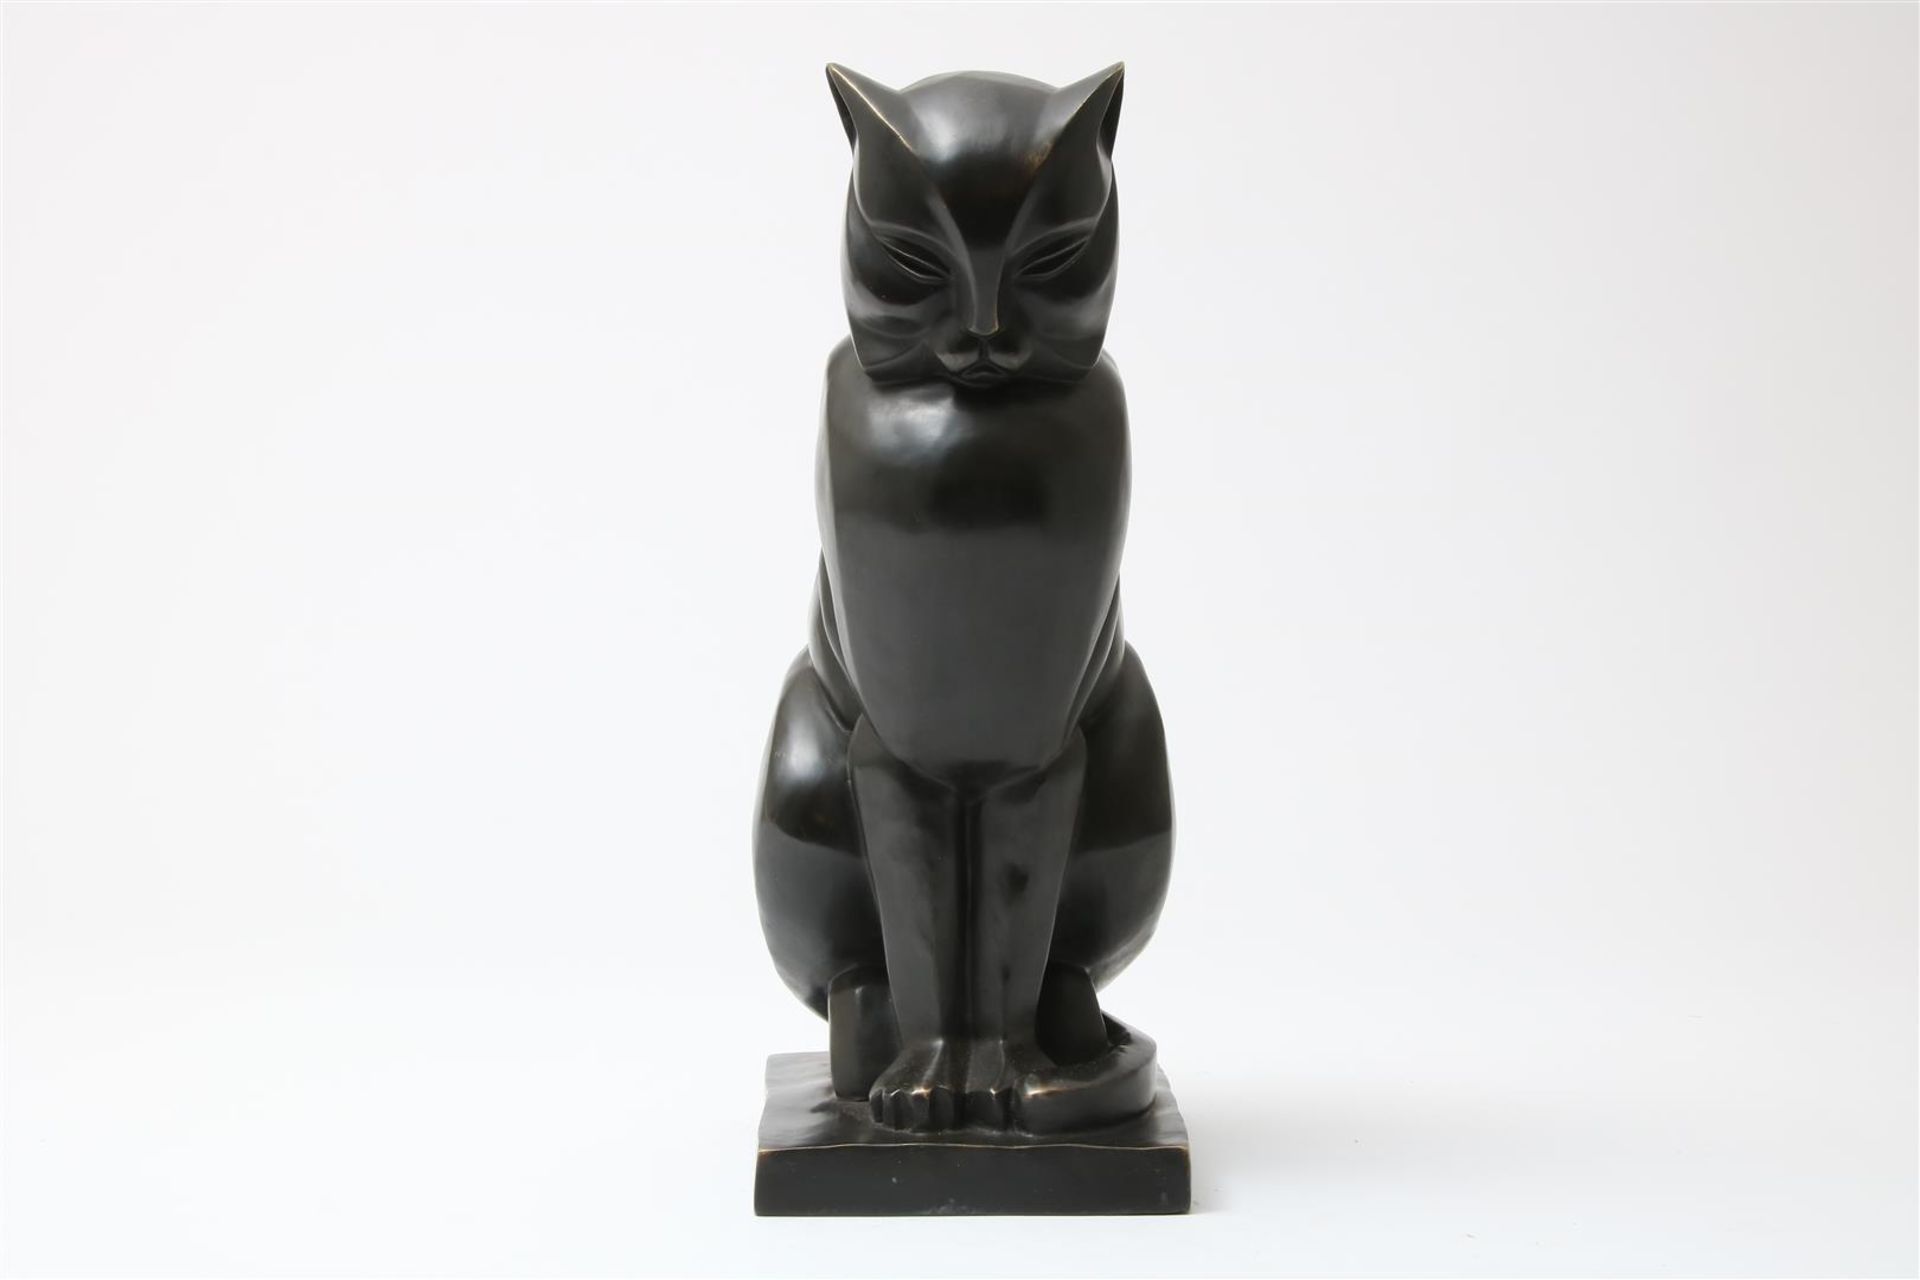 Bronze Art Deco-style sculpture of a cat, h. 46cm.